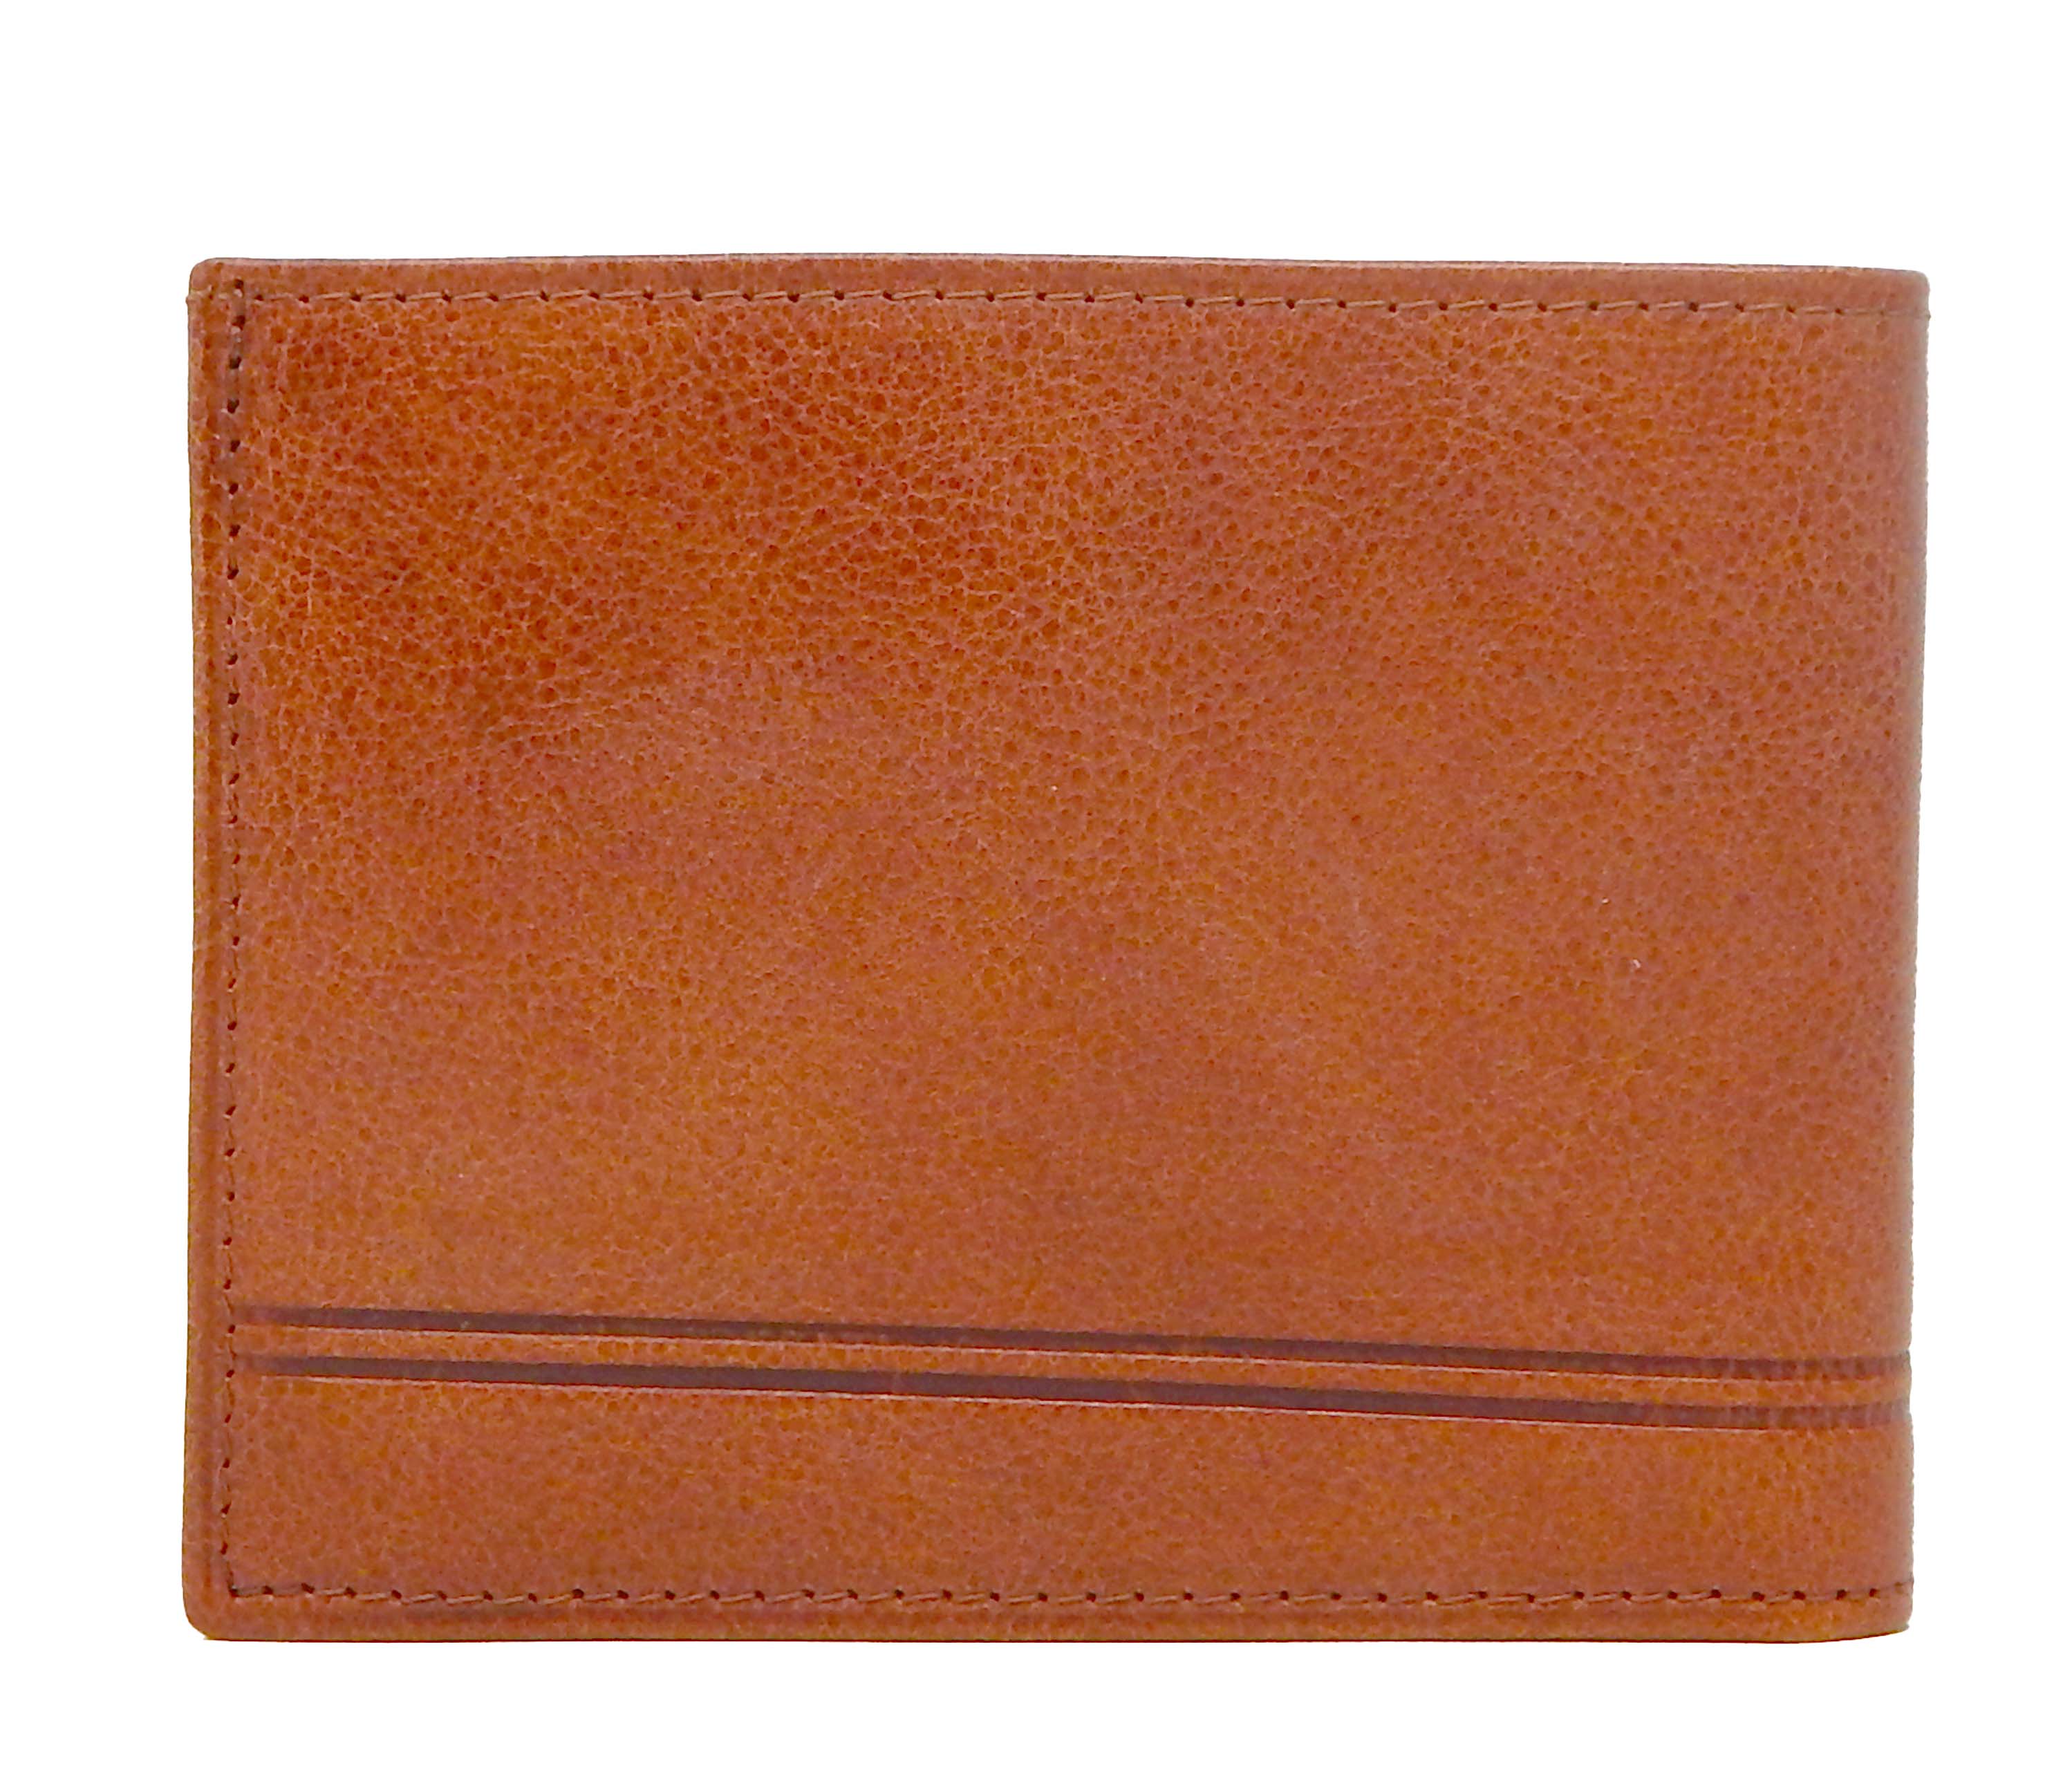 #color_ SaddleBrown | Cavalinho Men's Trifold Leather Wallet - SaddleBrown - 28610507.13.99_3